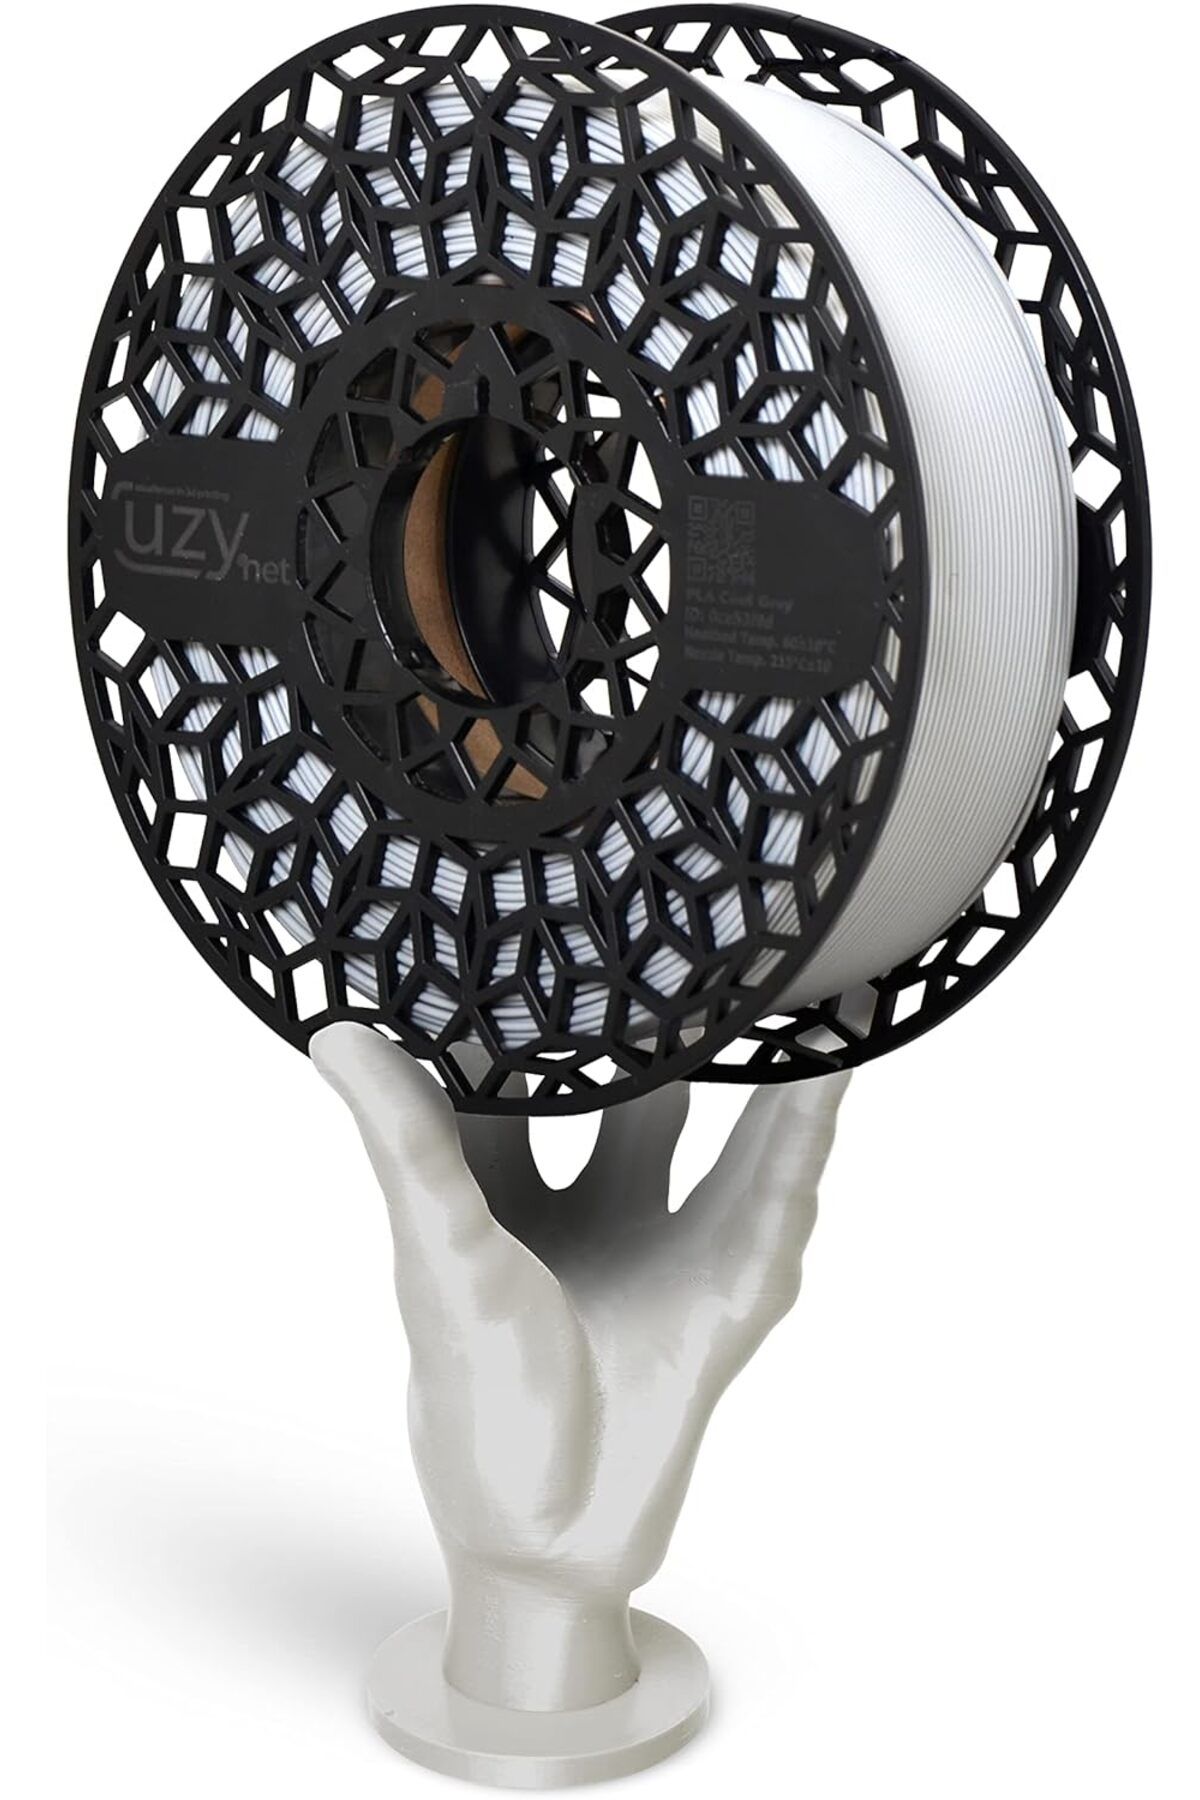 Savings Sphere PLA Cool Grey Filament Uyumlu 1.75mm 1kg Spool, Diameter Tolerance +/- 0.02mm Beyaz